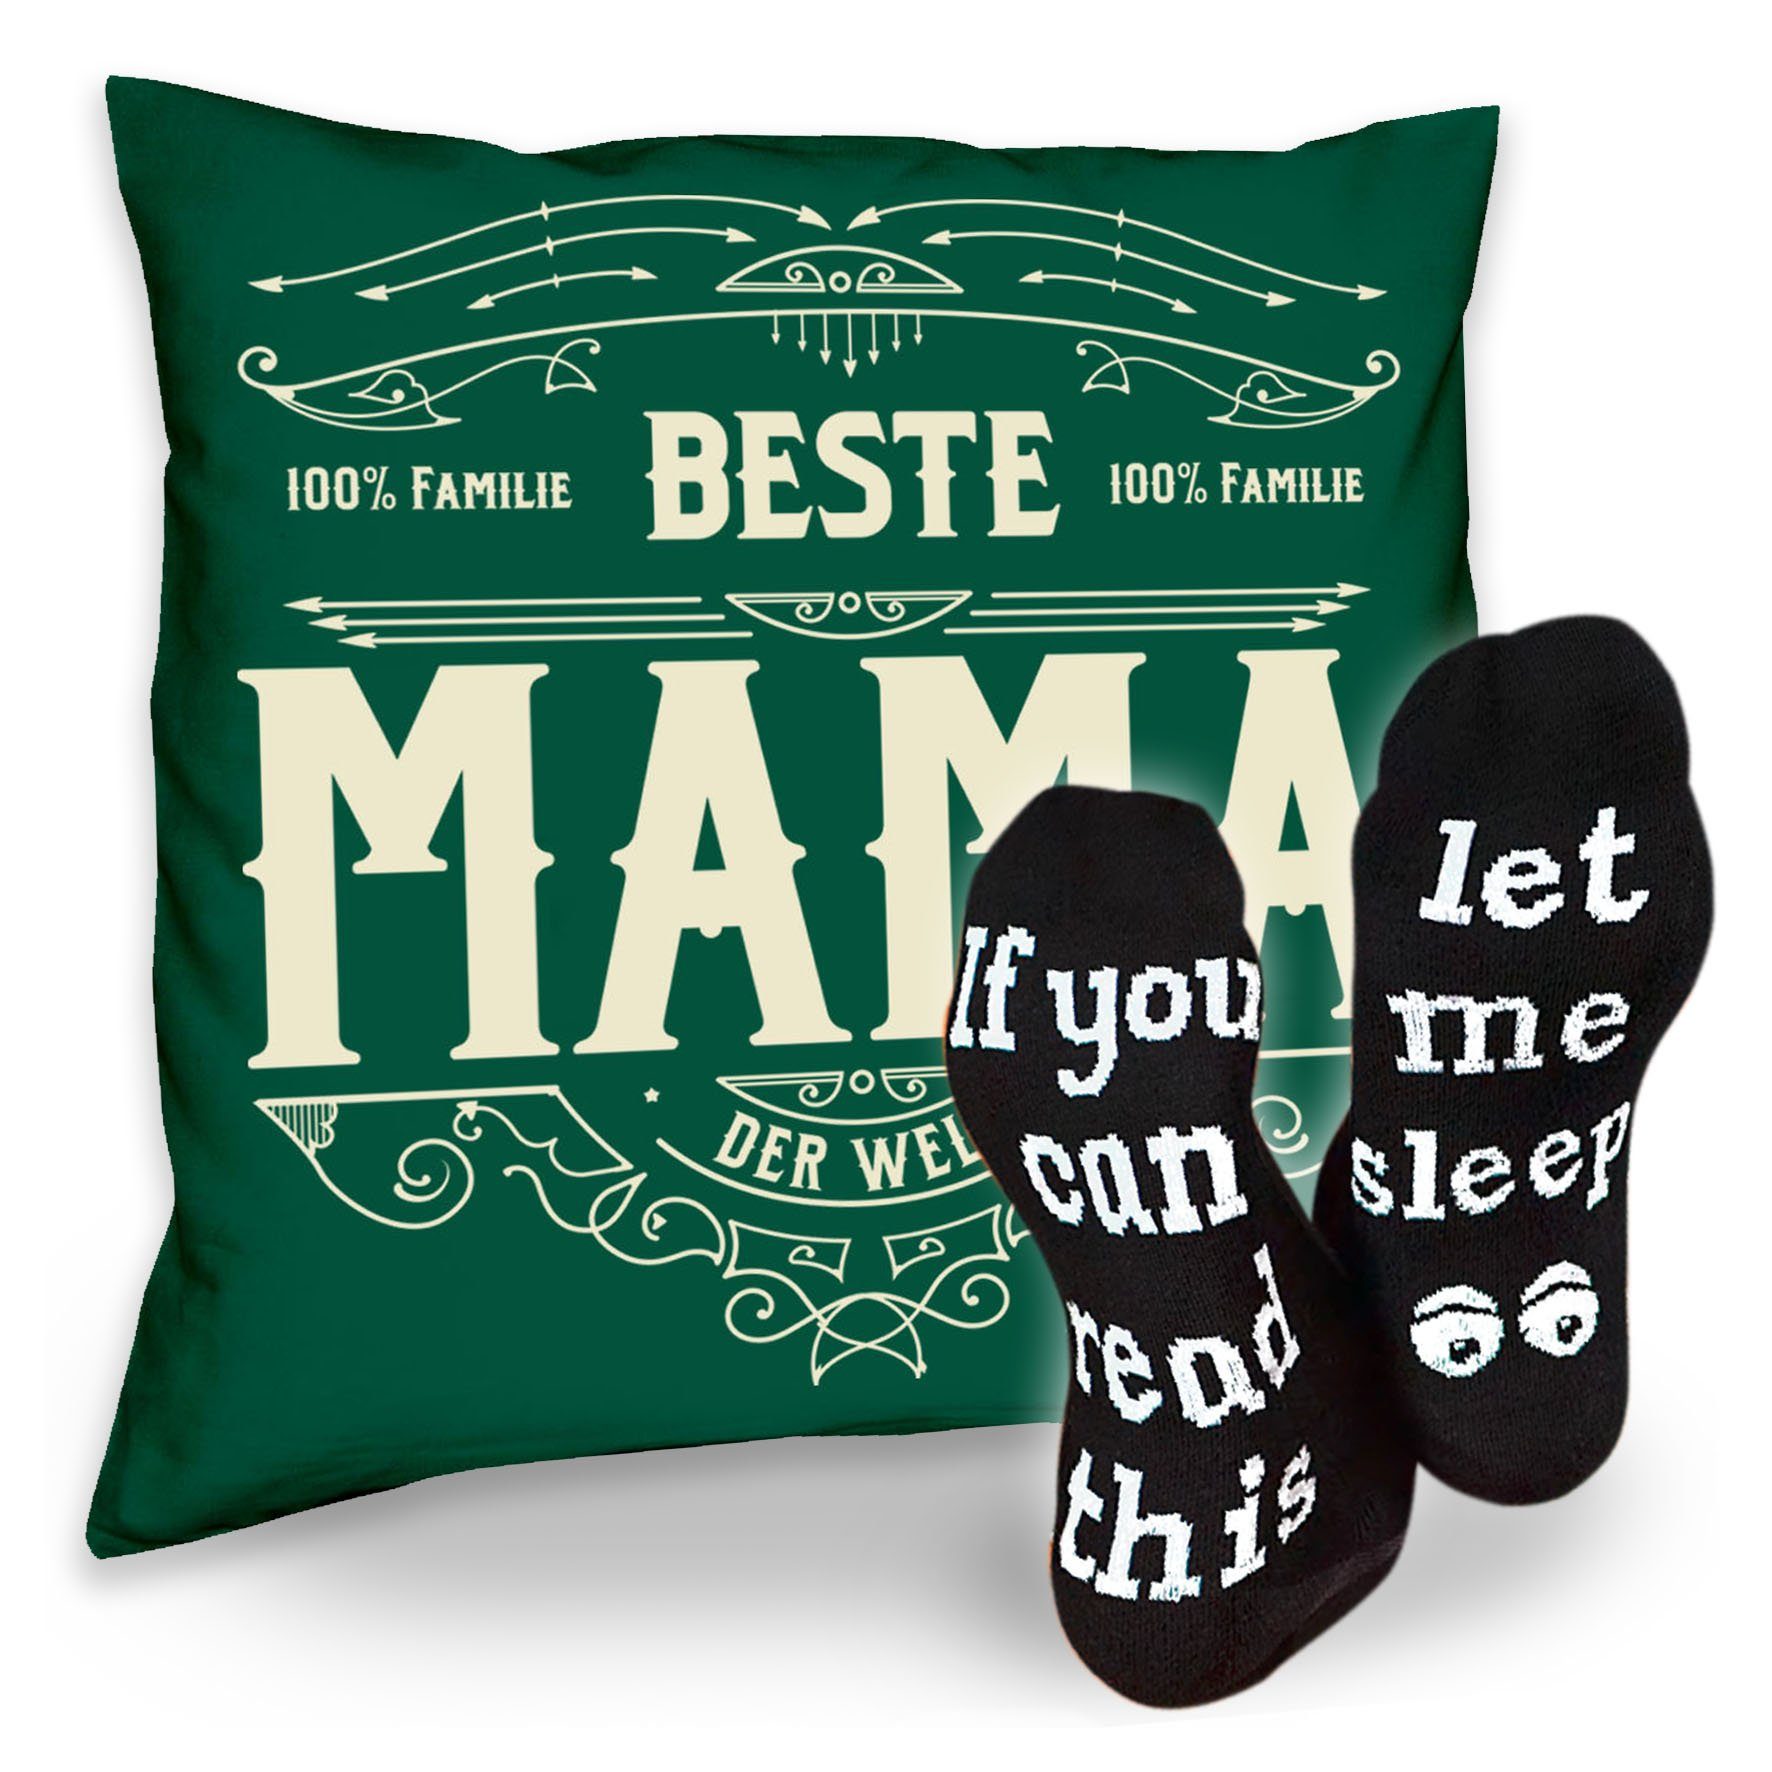 Soreso® Dekokissen Kissen Beste Mama & Sprüche Socken Sleep, Geschenke Weihnachten Geburtstag Muttertag dunkelgrün